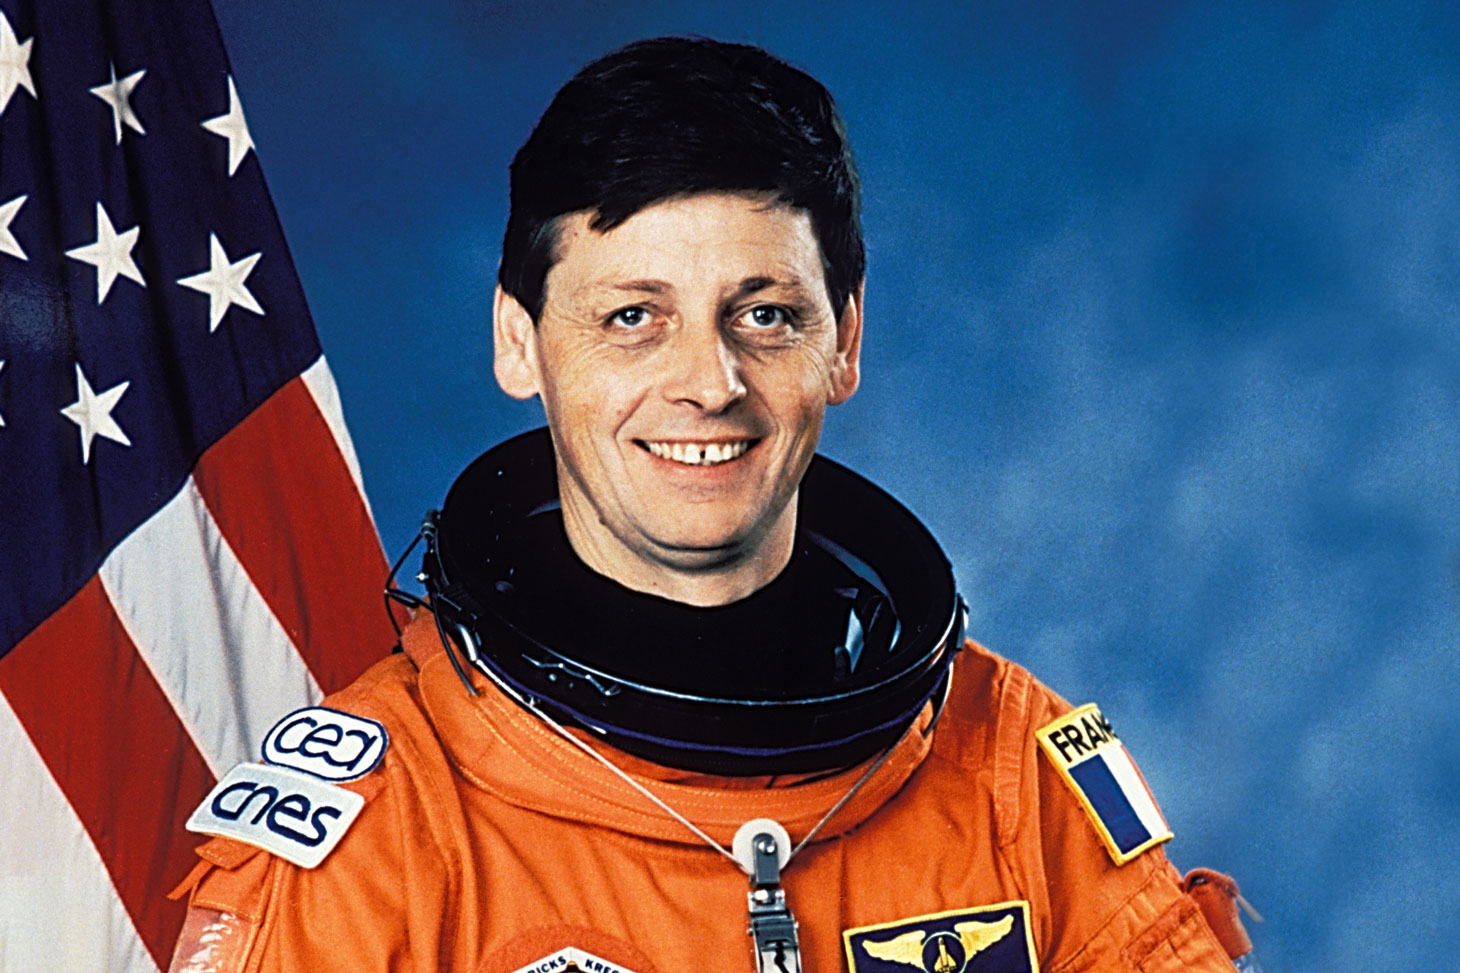 Jean-Jacques Favier en 1996 lors de sa mission spatiale à bord de la navette américaine Columbia © NASA